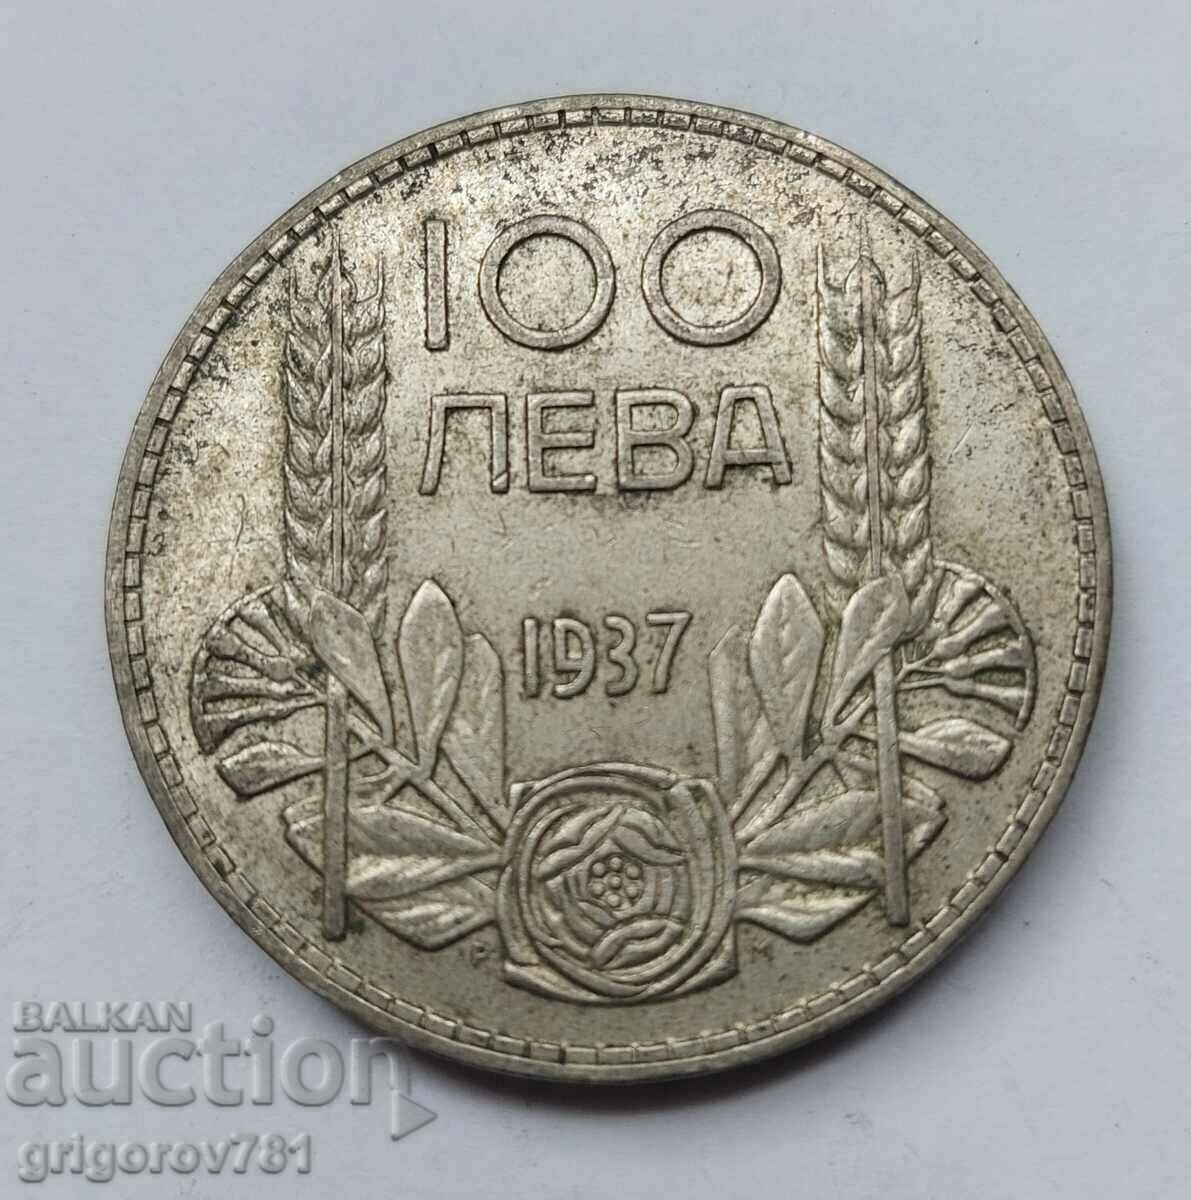 Ασήμι 100 λέβα Βουλγαρία 1937 - ασημένιο νόμισμα #21